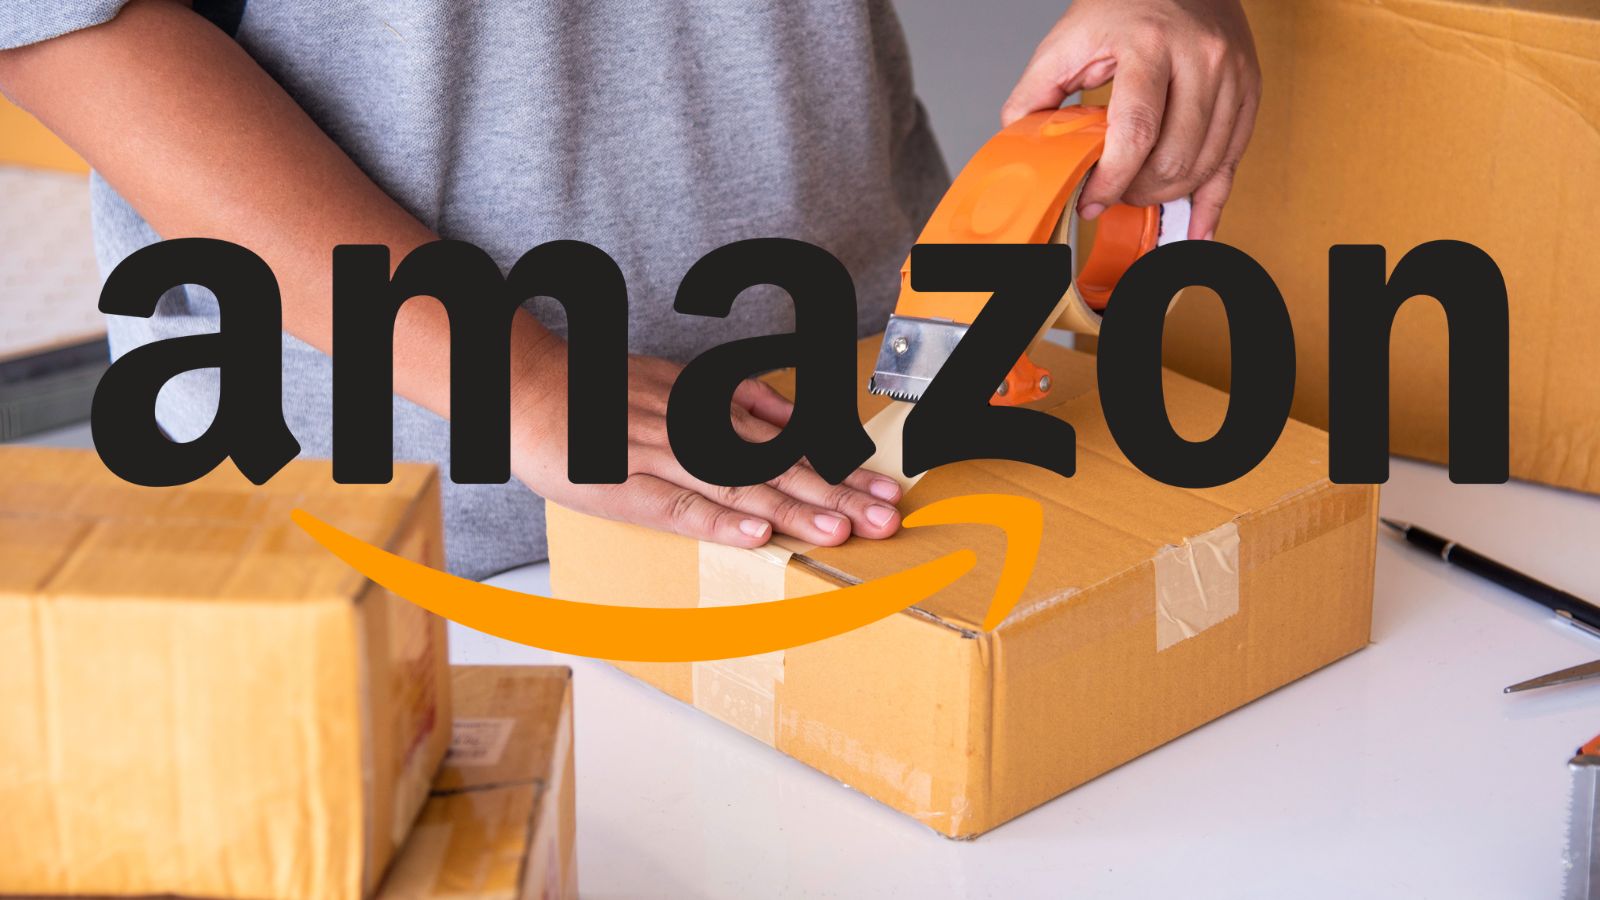 Amazon, tutto è quasi GRATIS, anche SMARTPHONE e computer